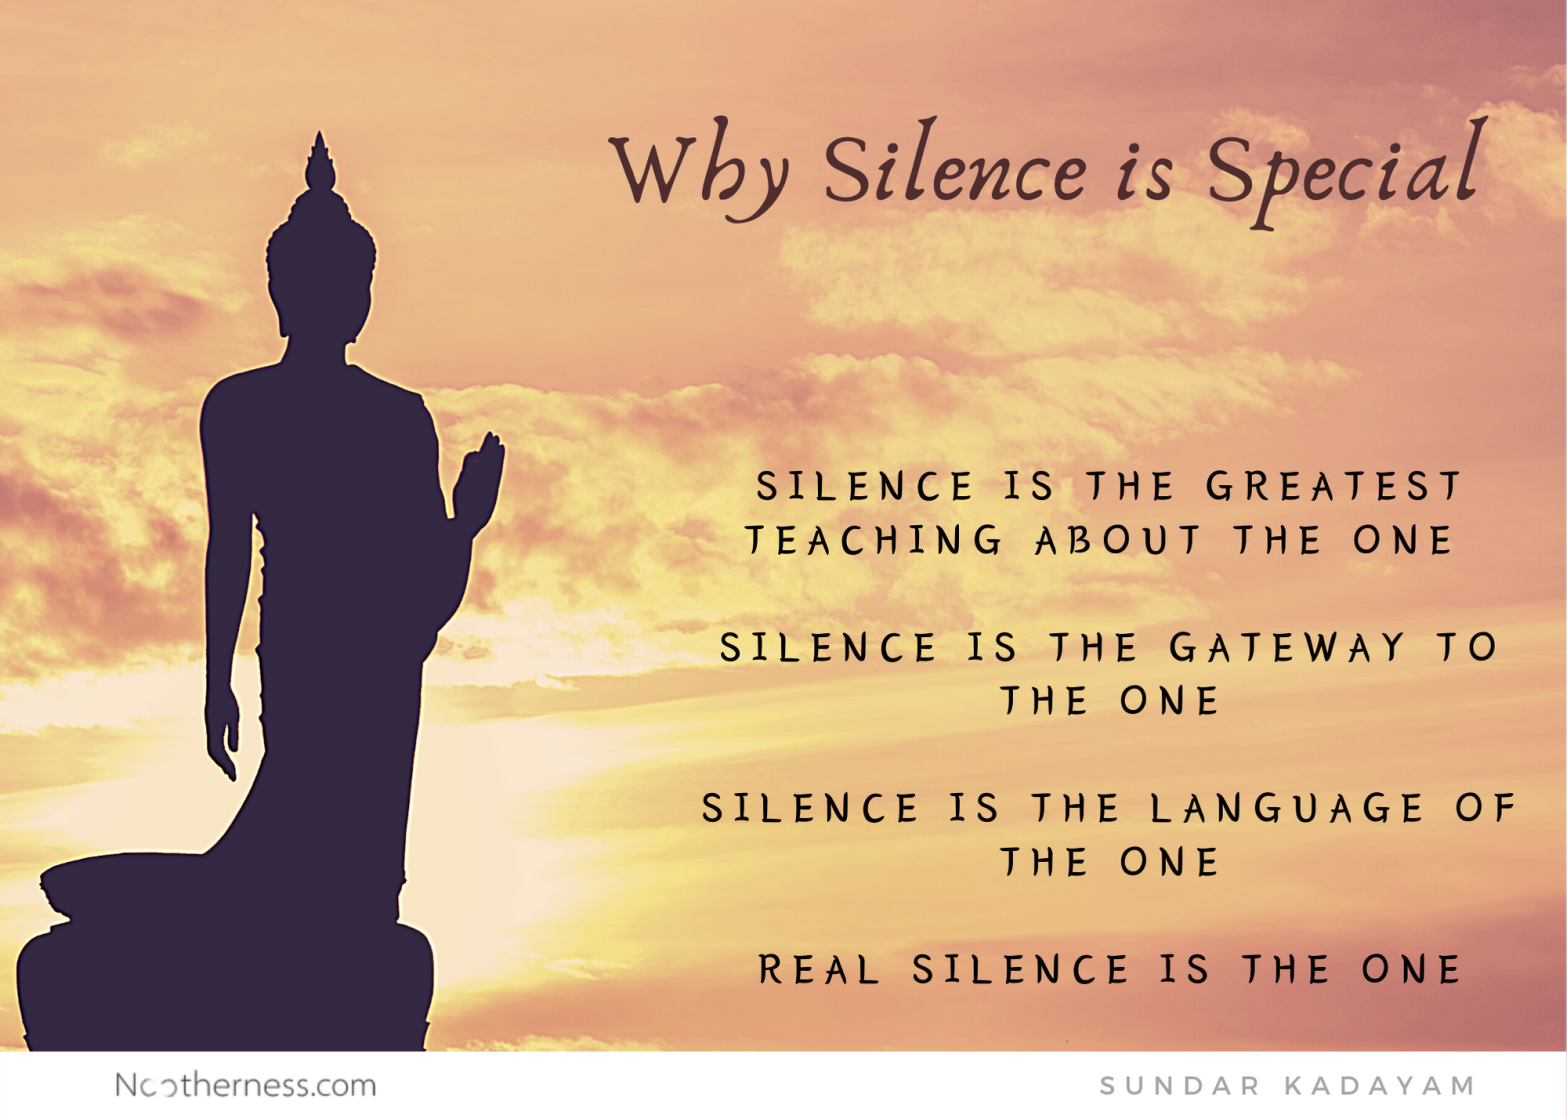 The secret of silence.